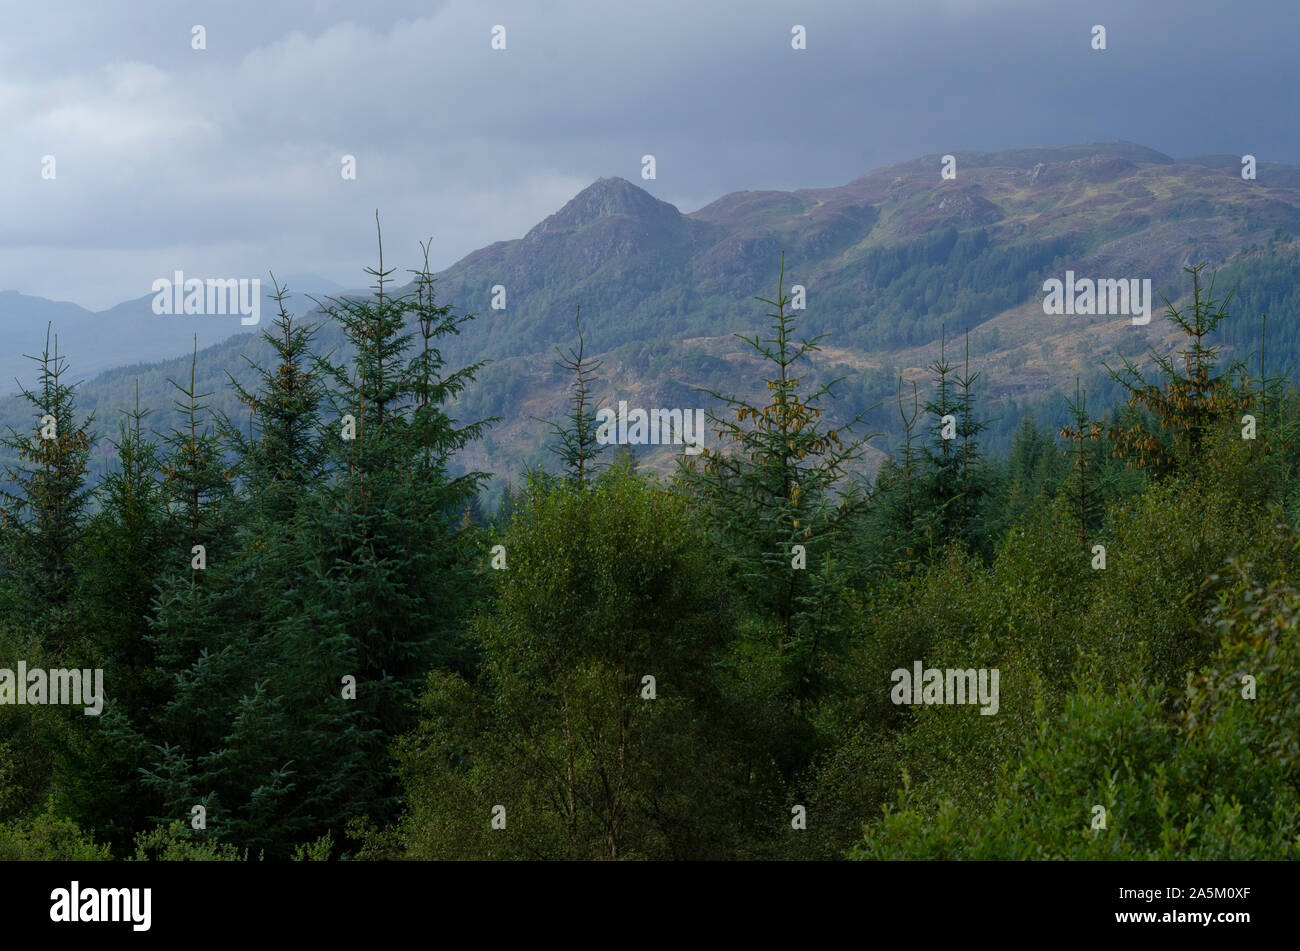 La forêt de feuillus et de pins dans le paysage montagneux des Trossachs dans la partie sud de la Scottish Highlands of Scotland UK Banque D'Images